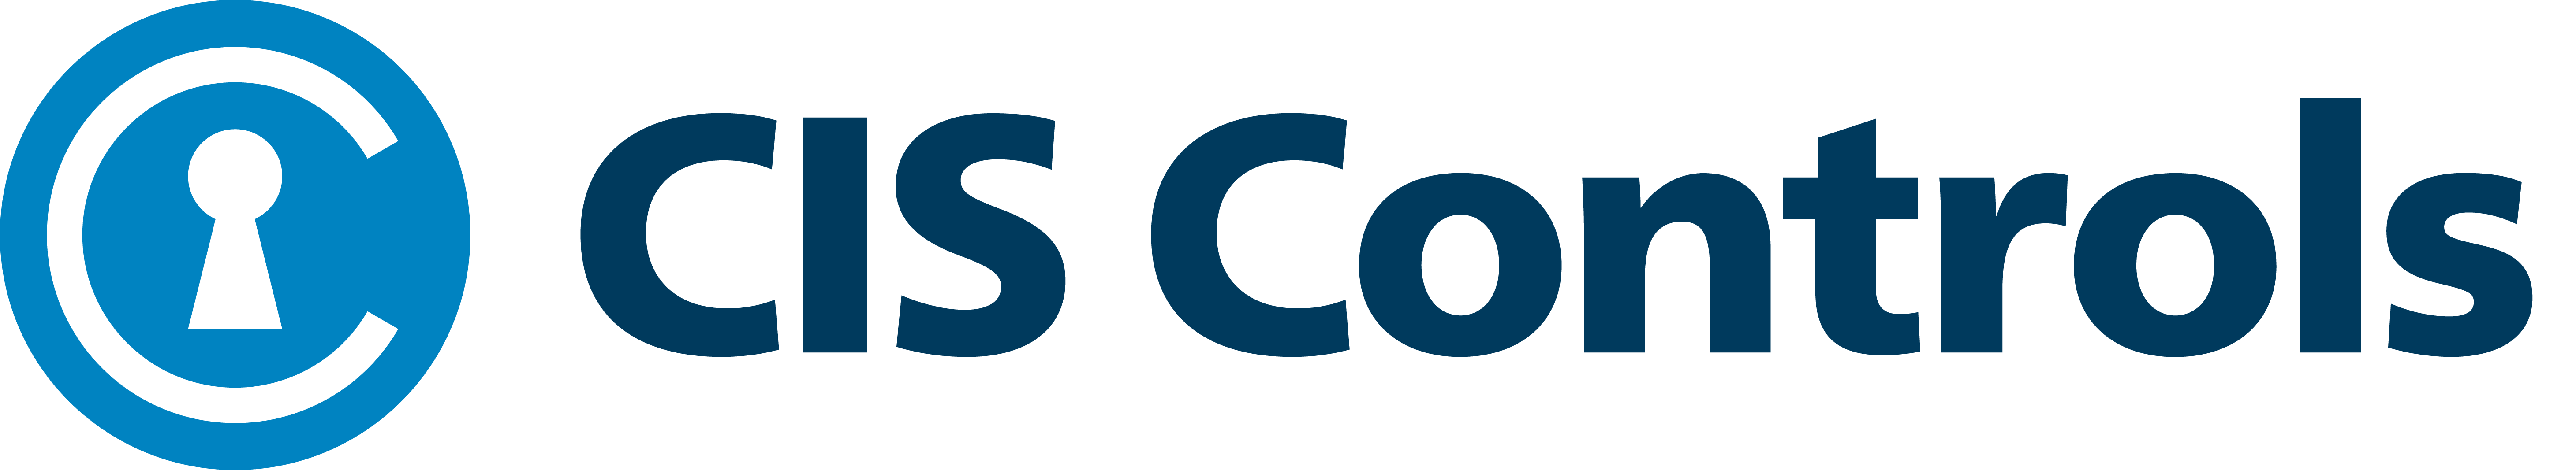 CIS-Controls logo